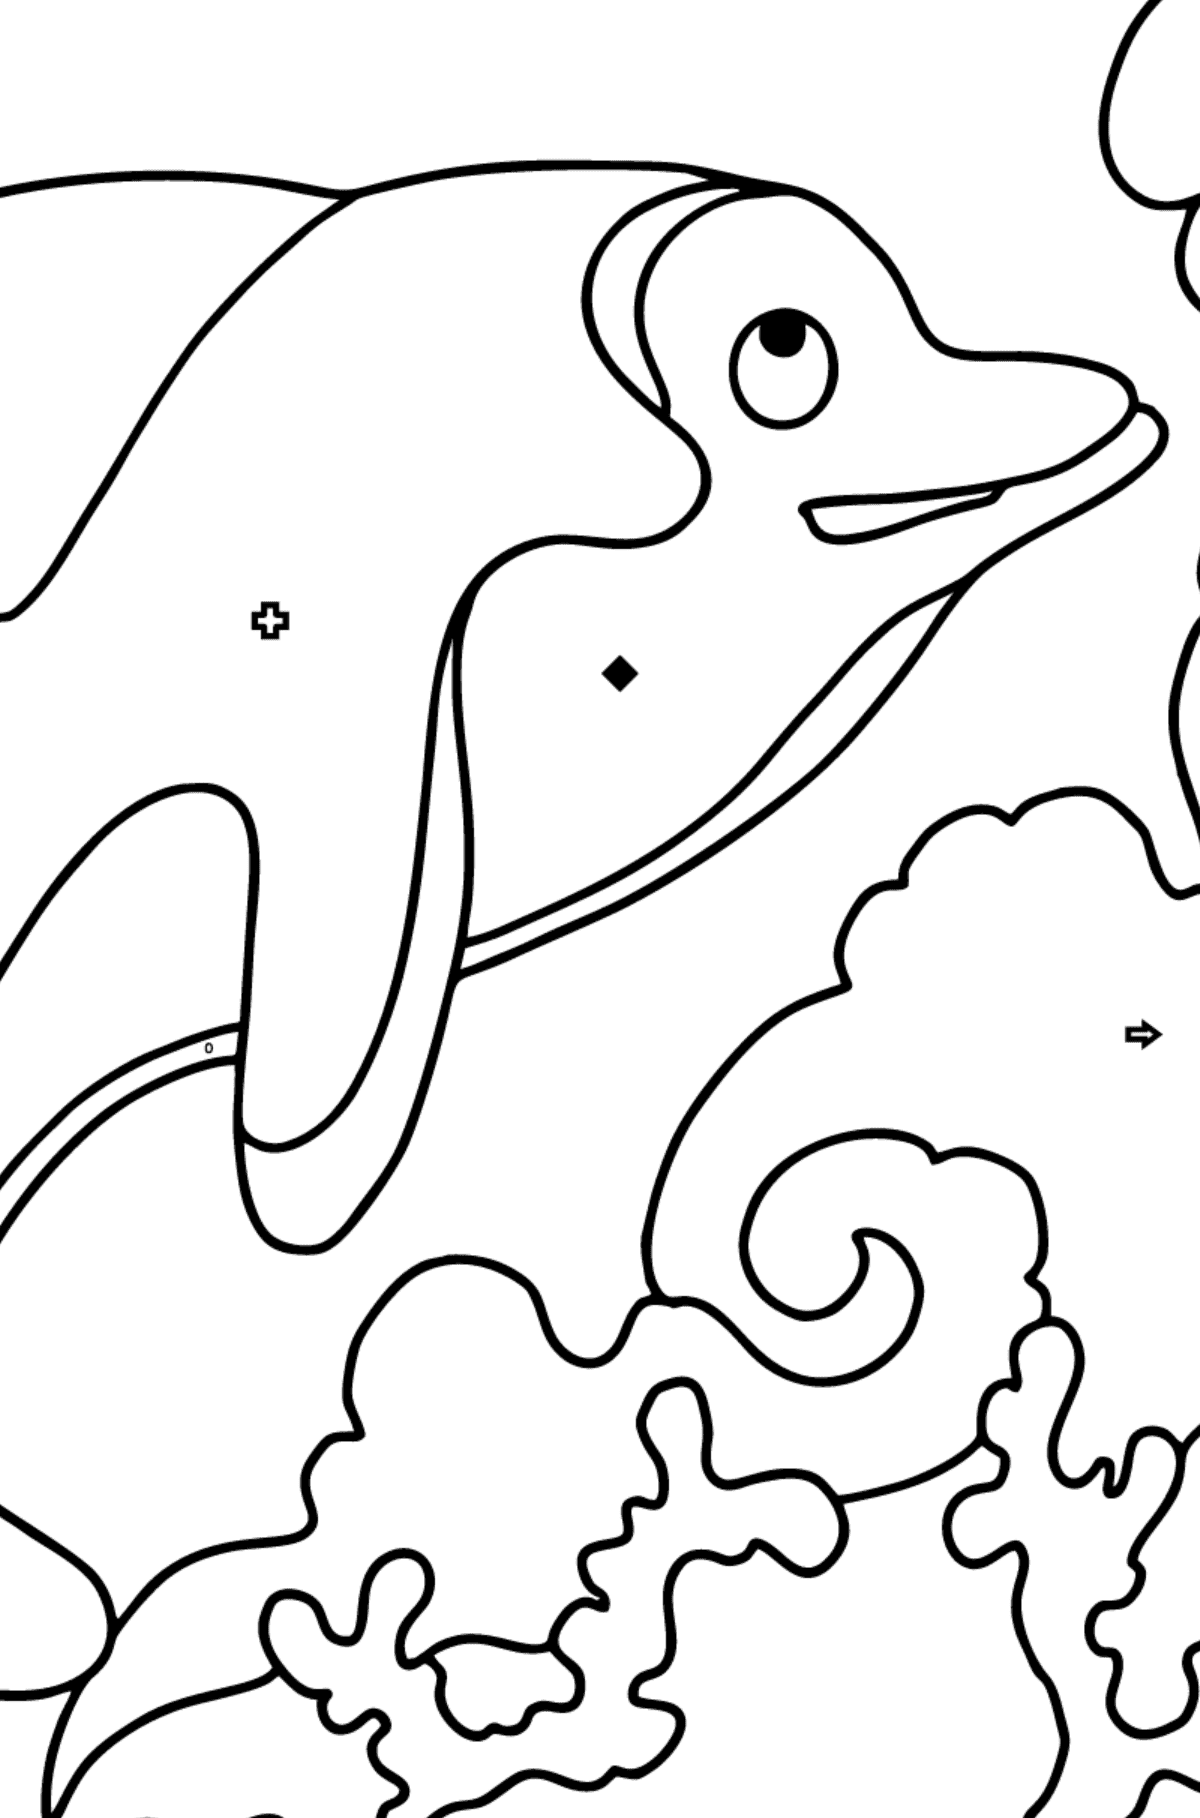 Розмальовка дельфіна для дітей - Розмальовка по Символам і Геометричним Фігурам для дітей